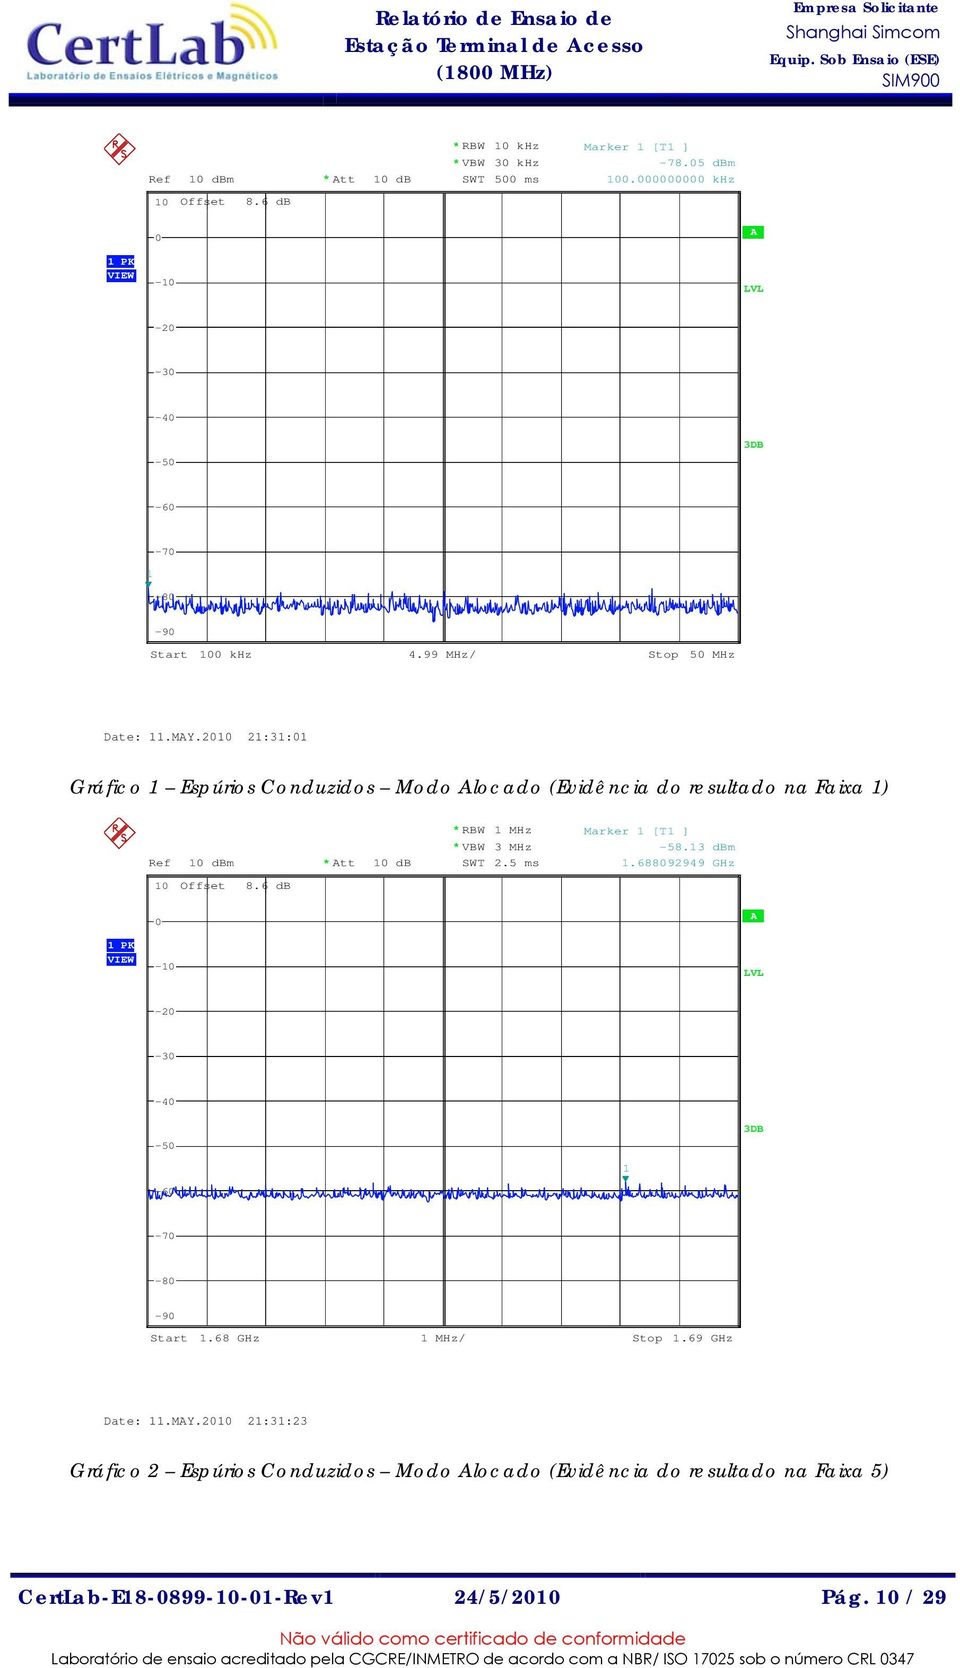 2010 21:31:01 Gráfico 1 Espúrios Conduzidos Modo Alocado (Evidência do resultado na Faixa 1) Ref 10 dbm * Att 10 db * RBW 1 MHz * VBW 3 MHz SWT 2.5 ms Marker 1 [T1 ] -58.